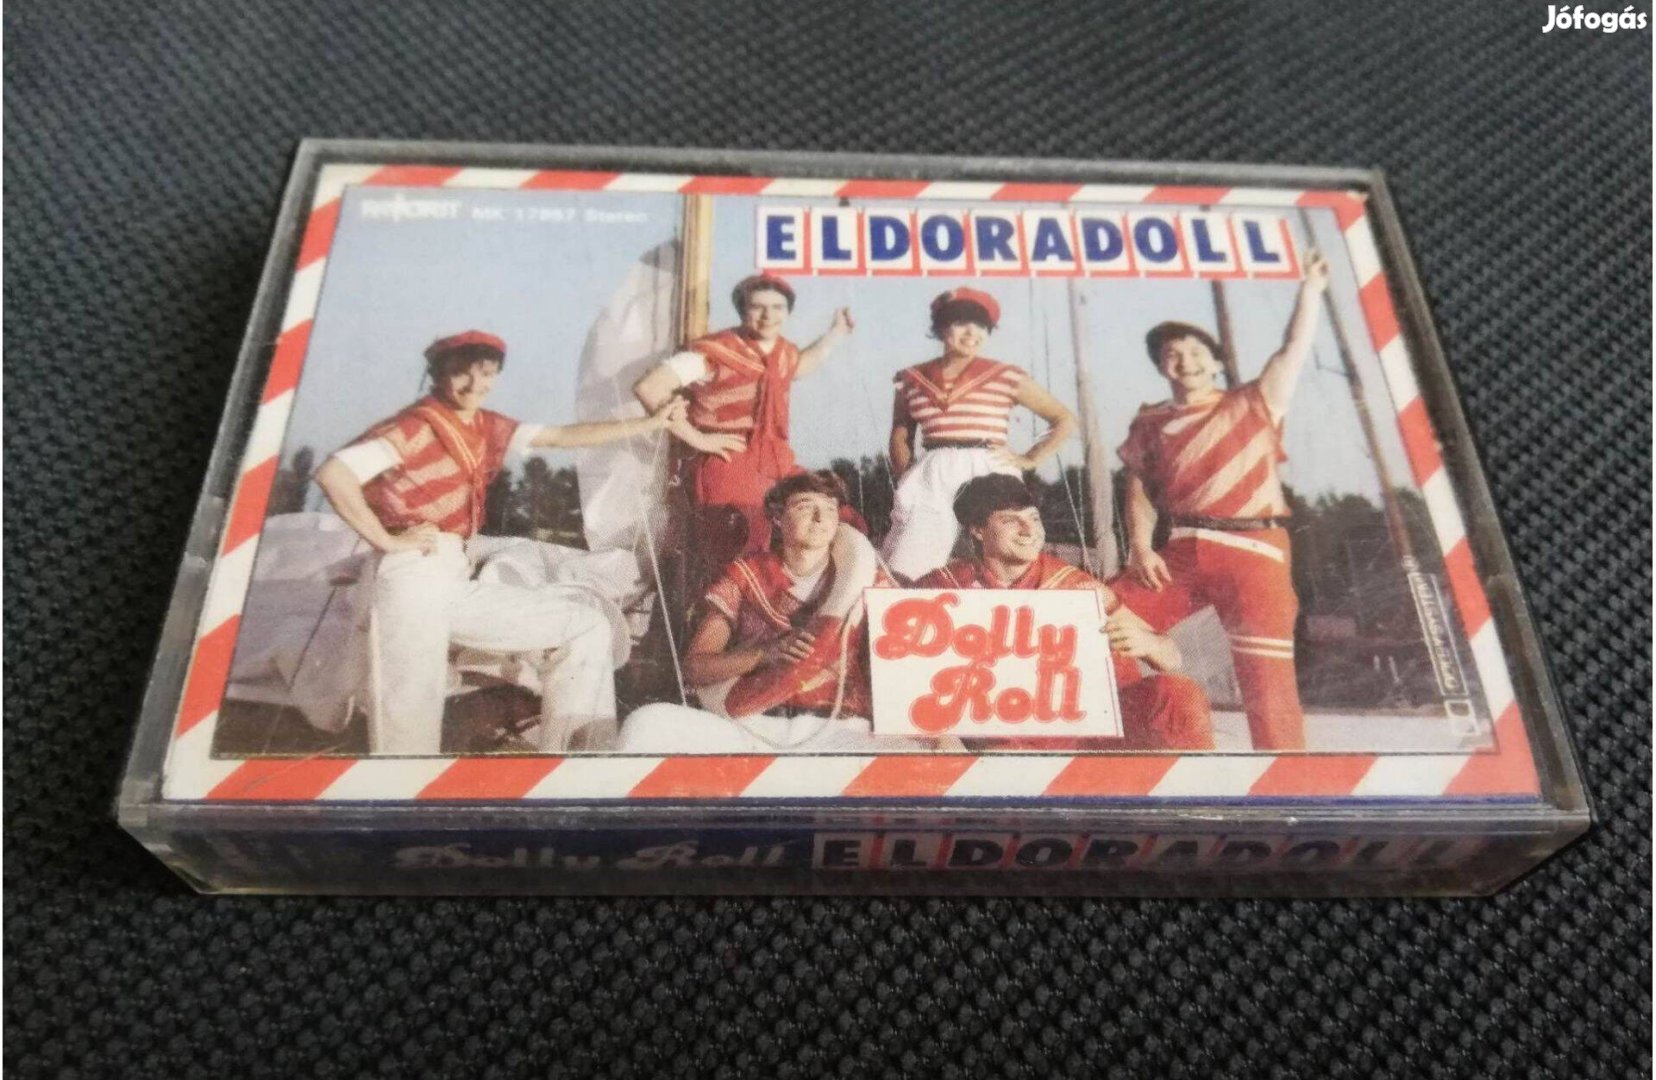 Dolly Roll - Eldoradoll kazetta eladó